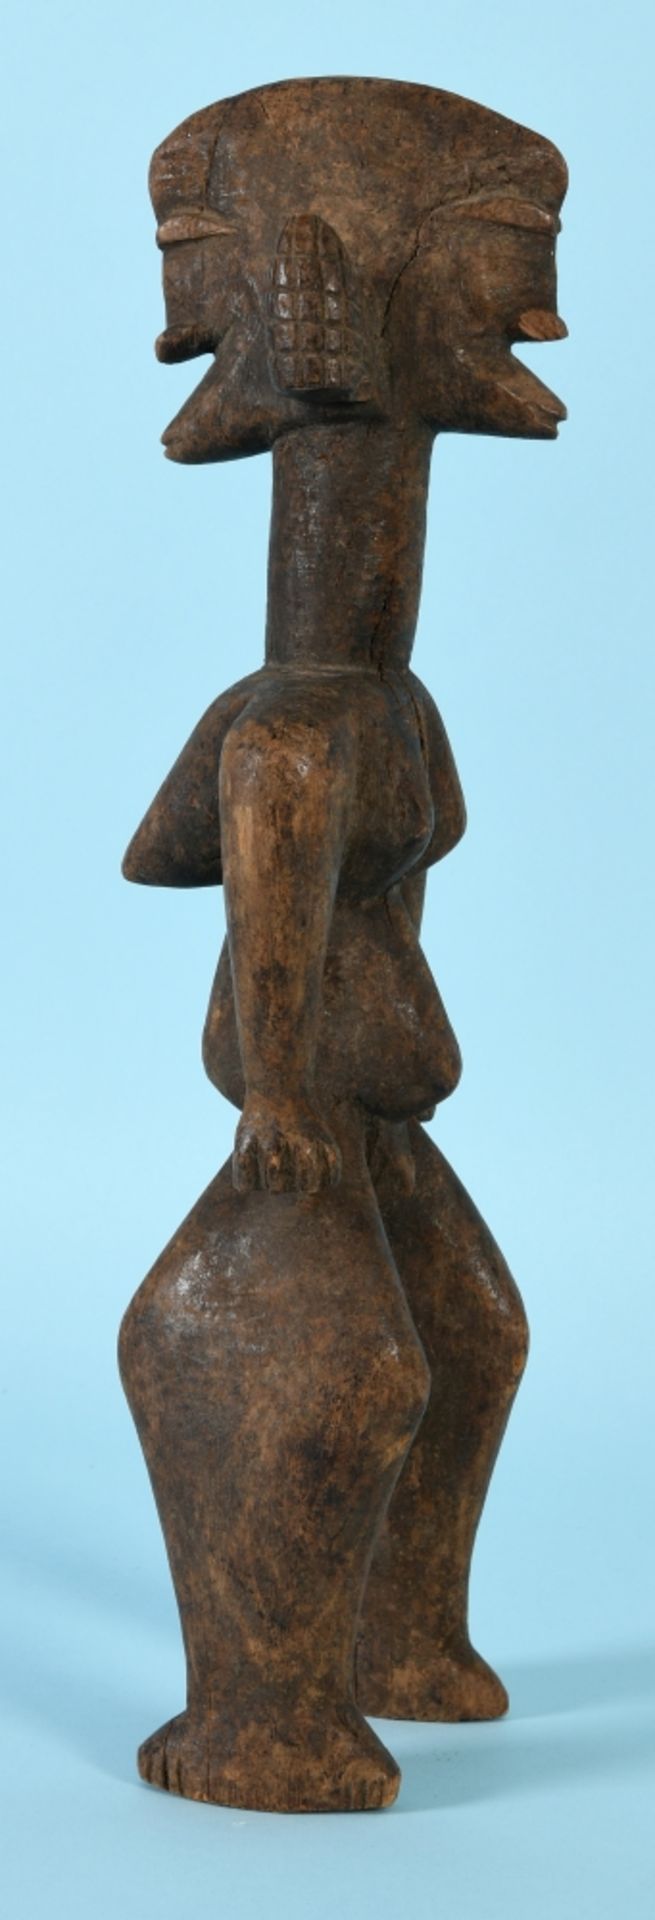 Afrikanische Kultfigur - Frauenfigur